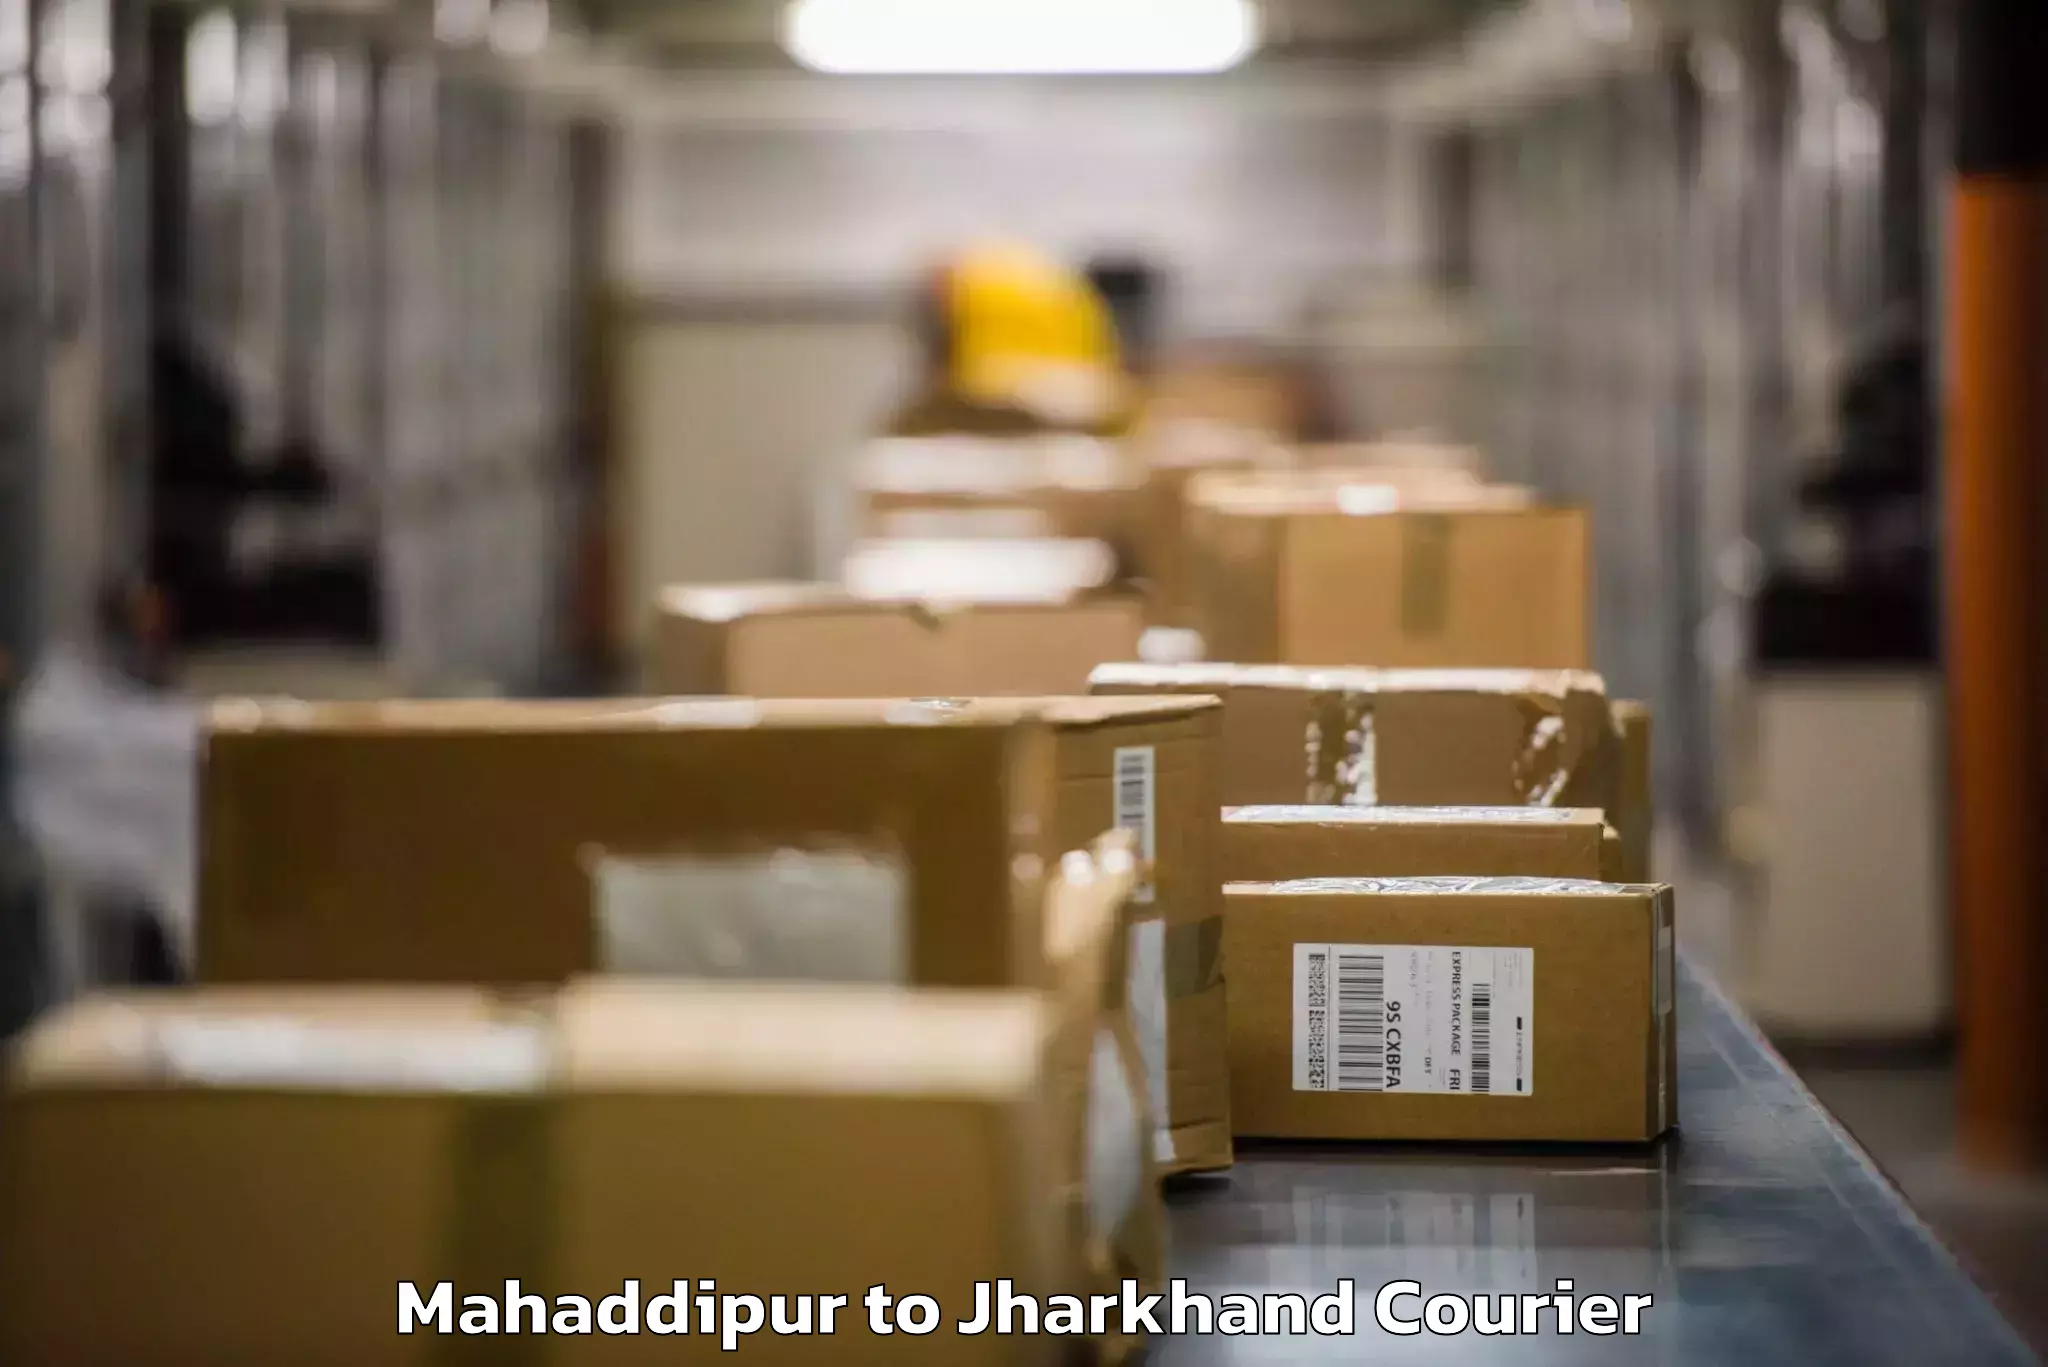 Baggage shipping experts Mahaddipur to Seraikella